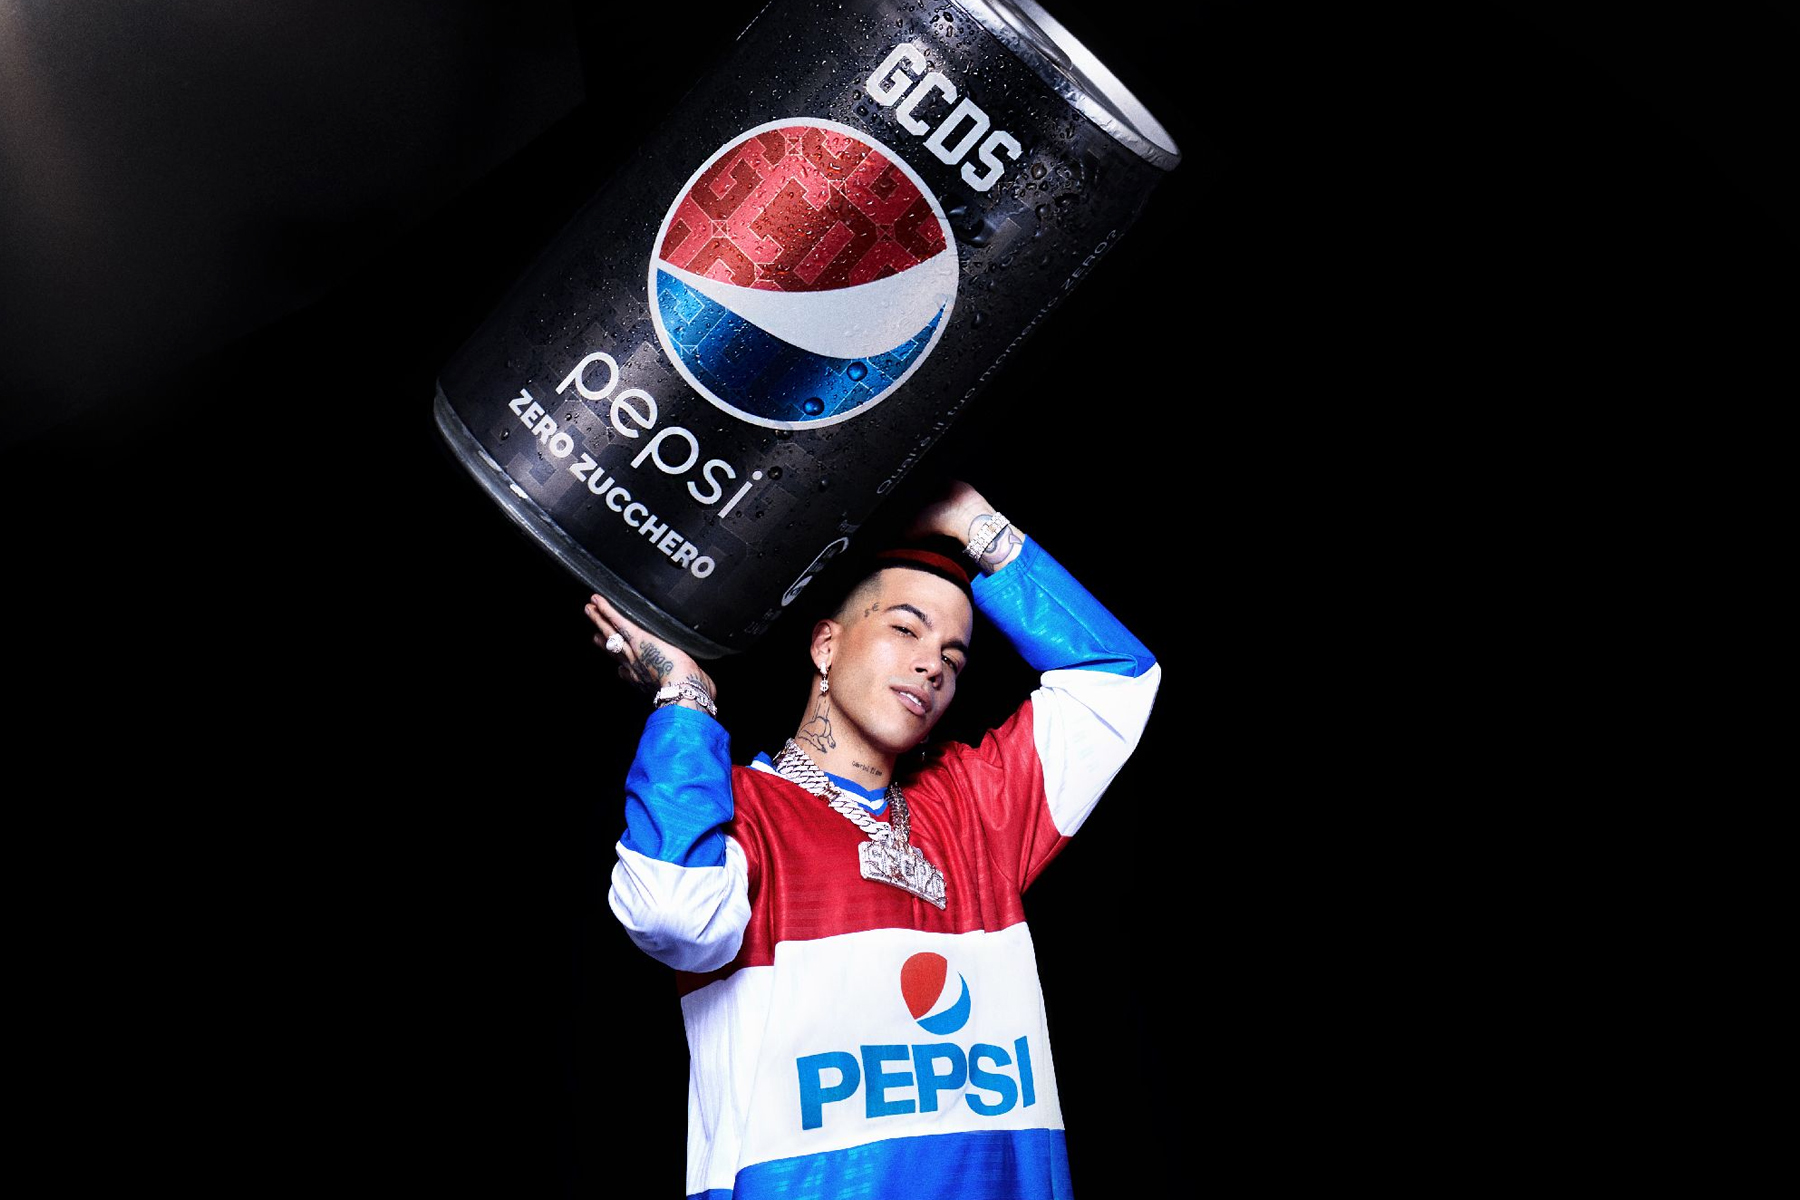 GCDS Pepsi Zero Collaborazione Sfera Ebbasta